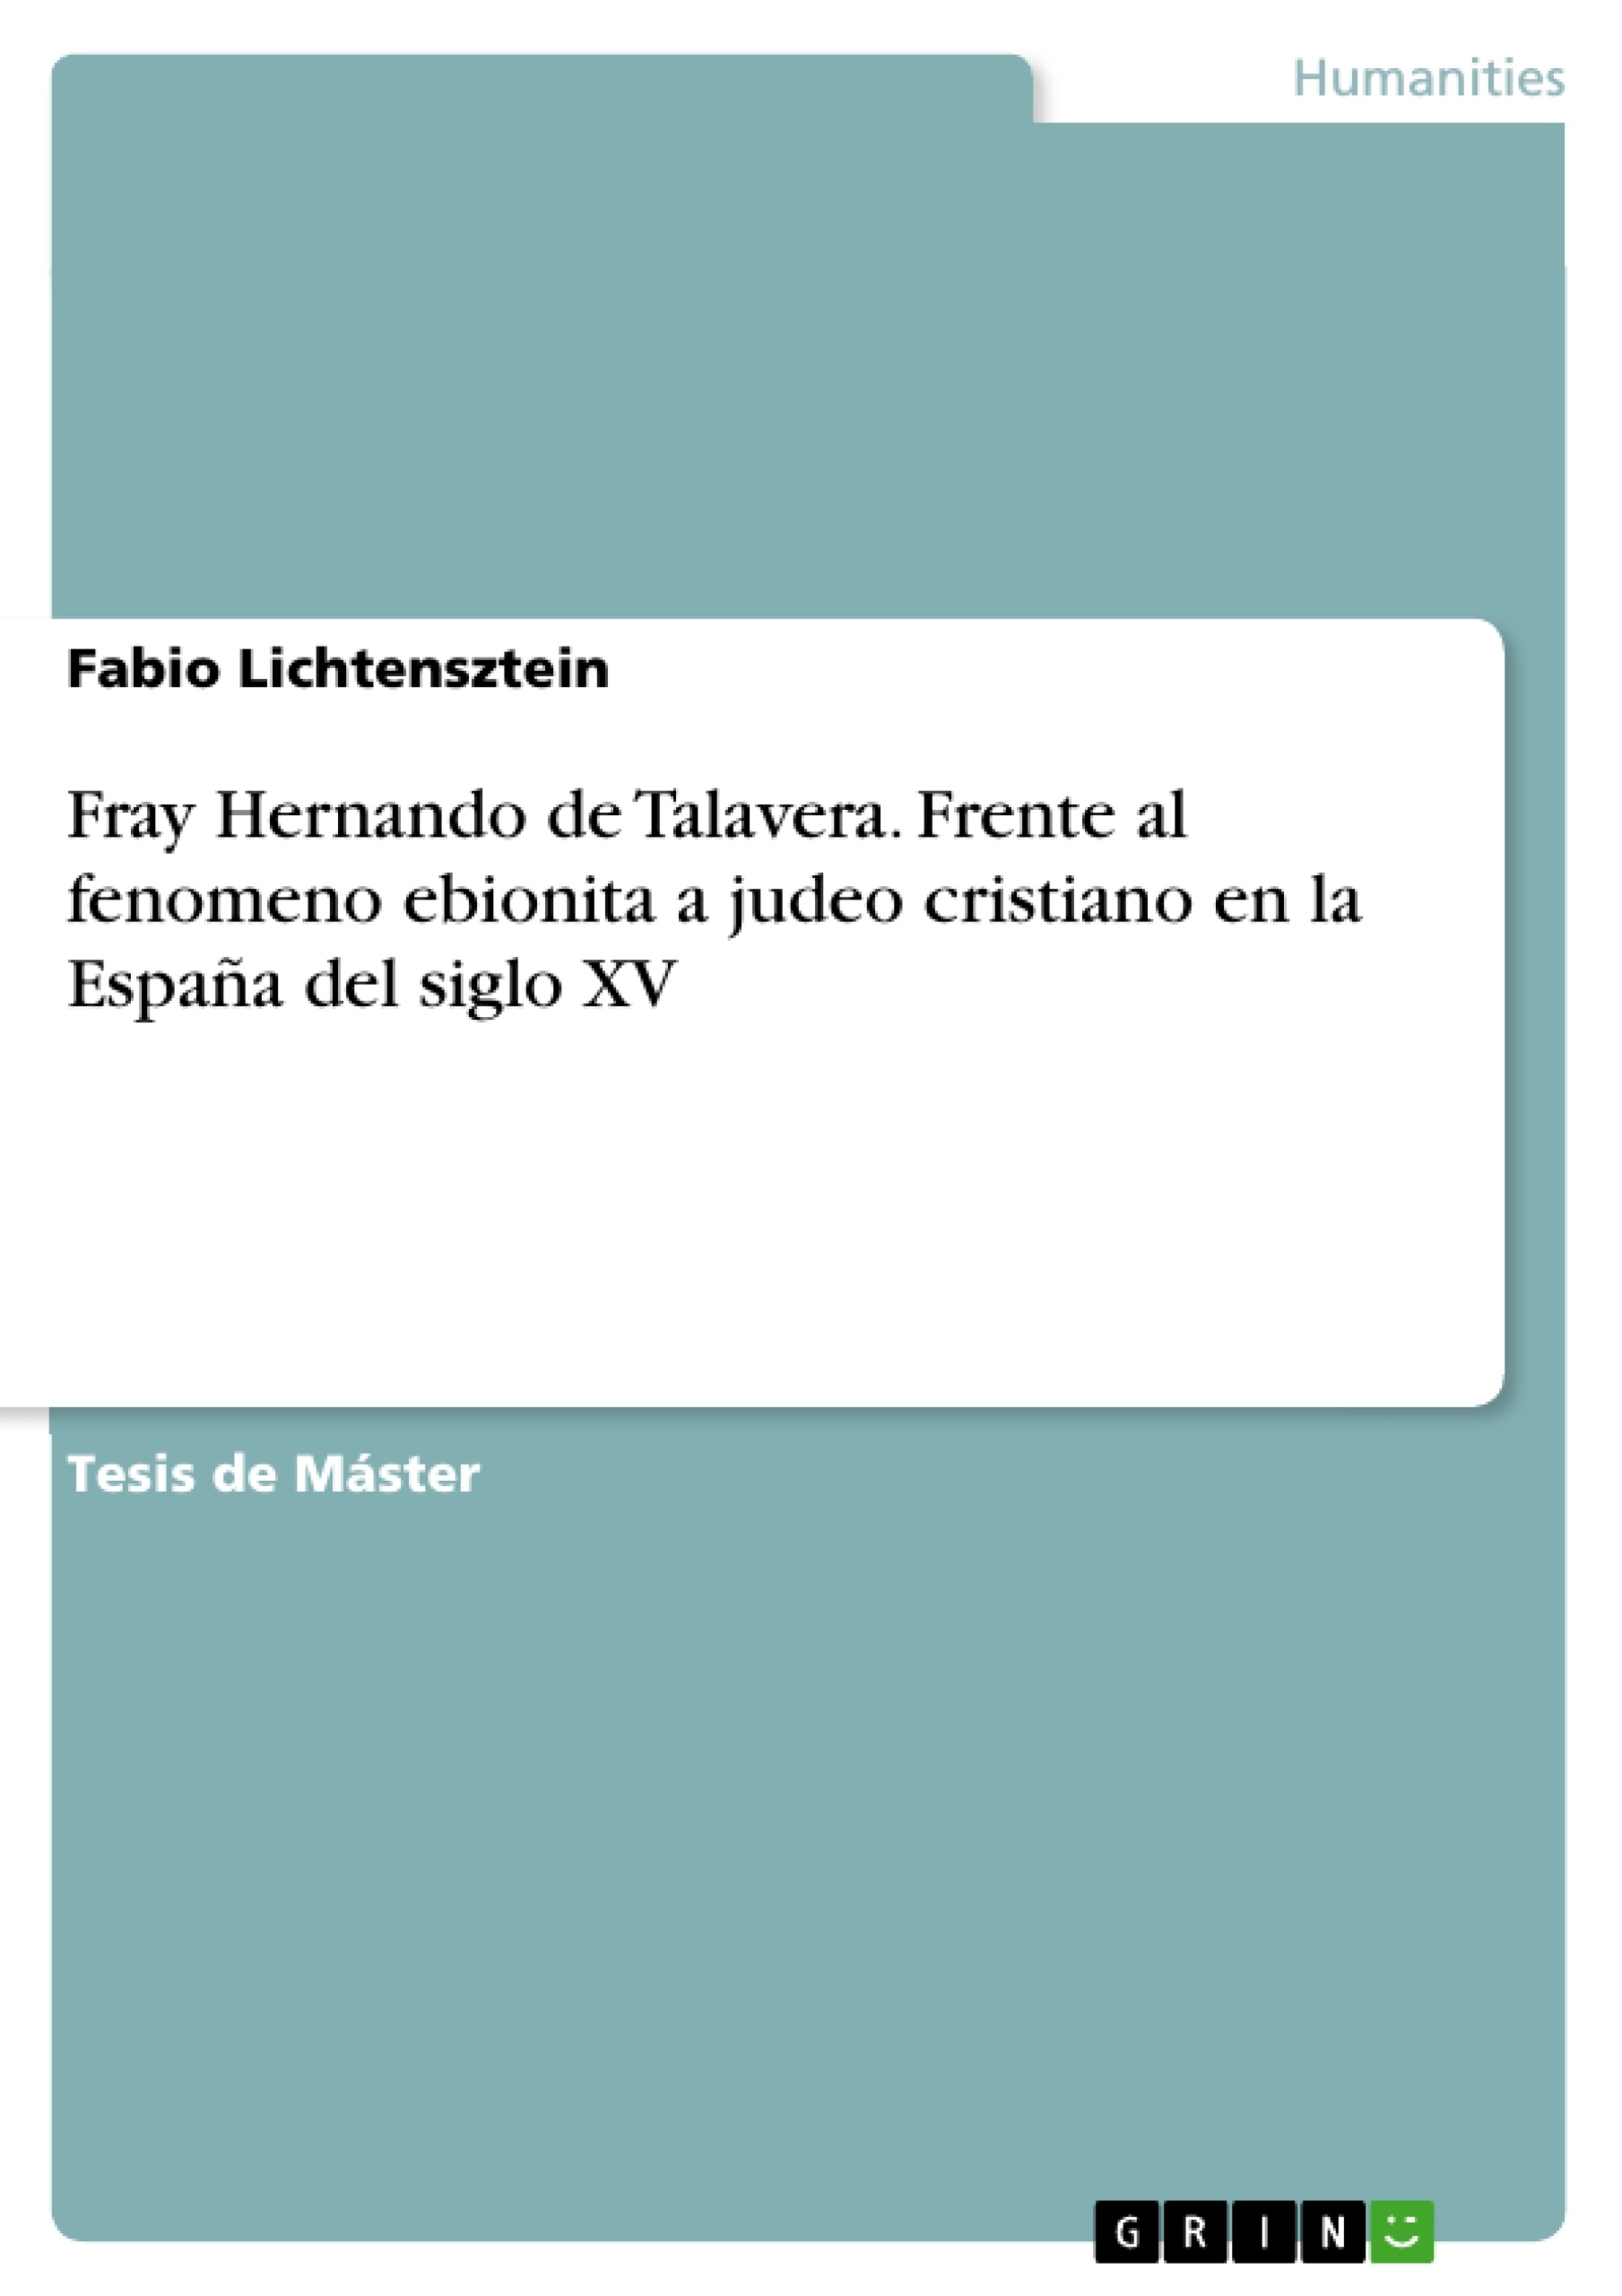 Titre: Fray Hernando de Talavera. Frente al fenomeno ebionita a judeo cristiano en la España del siglo XV